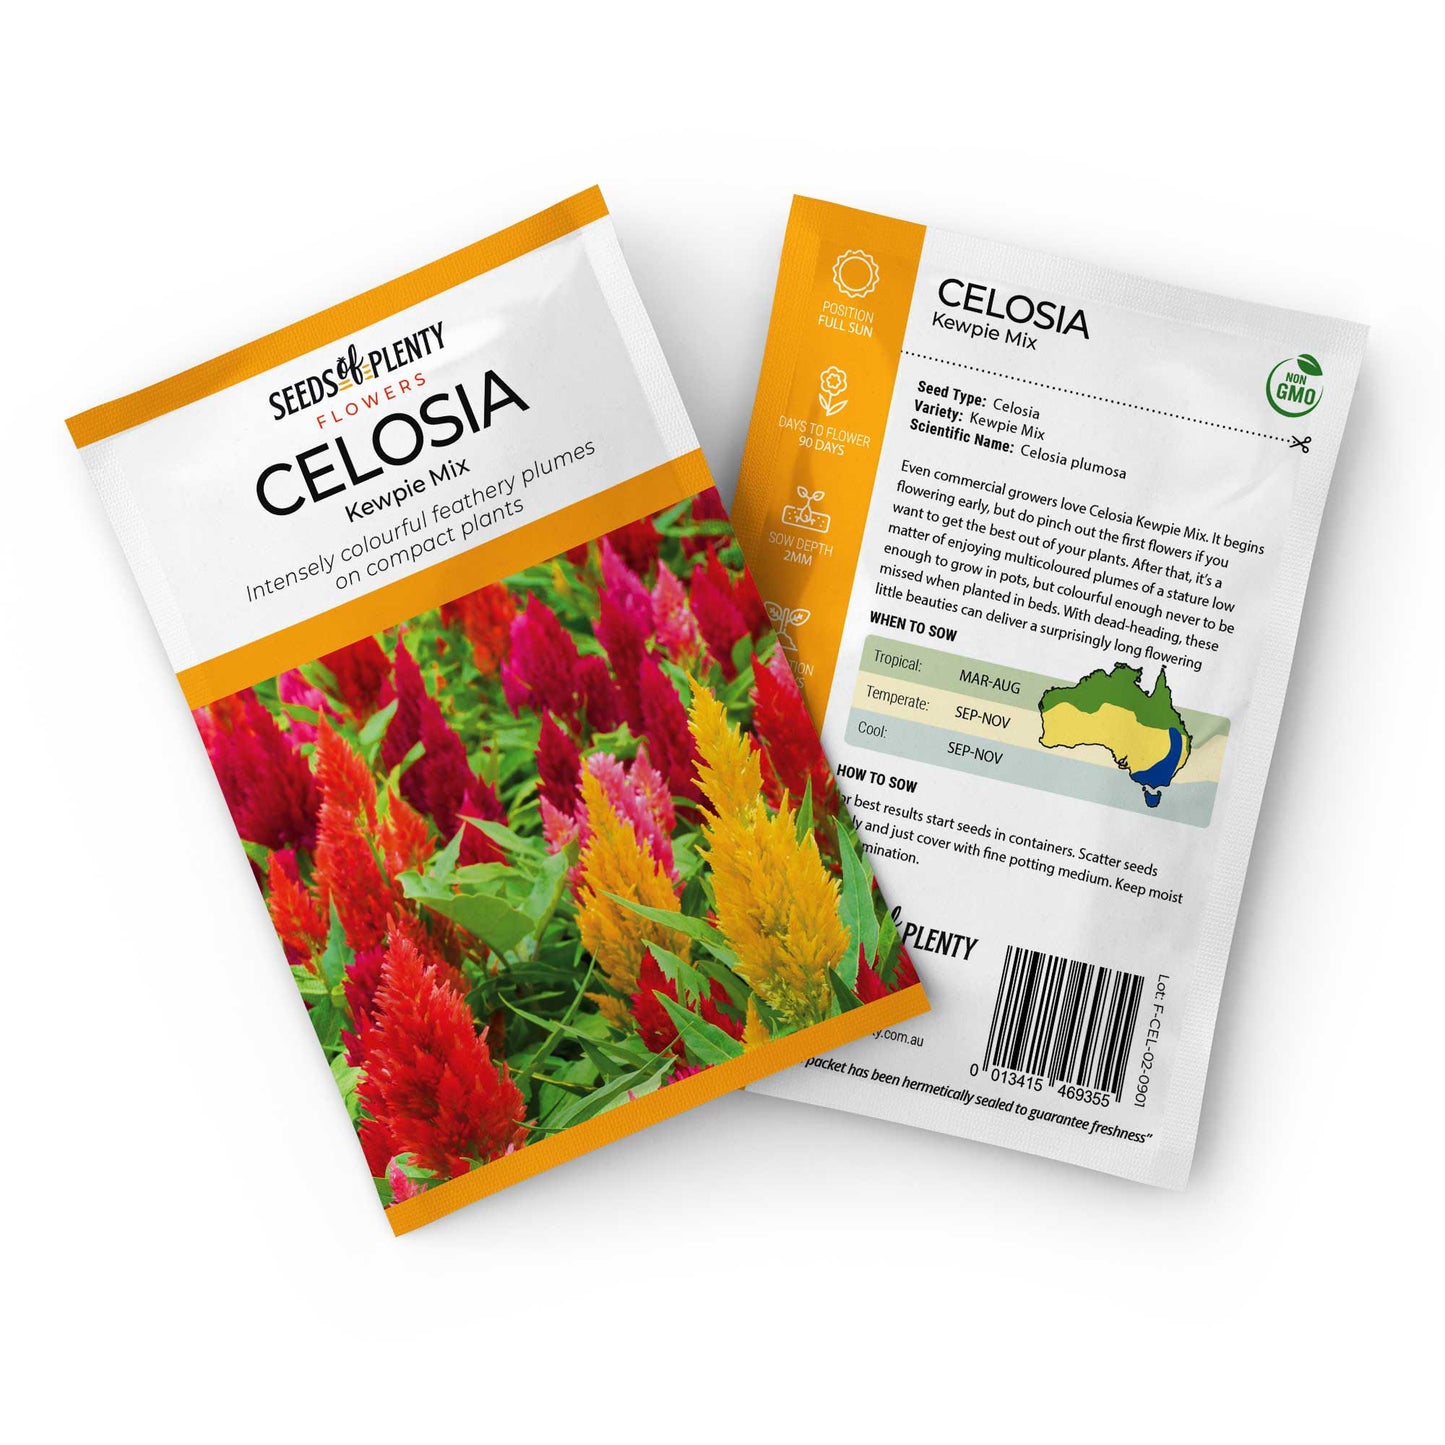 CELOSIA - Kewpie Mix